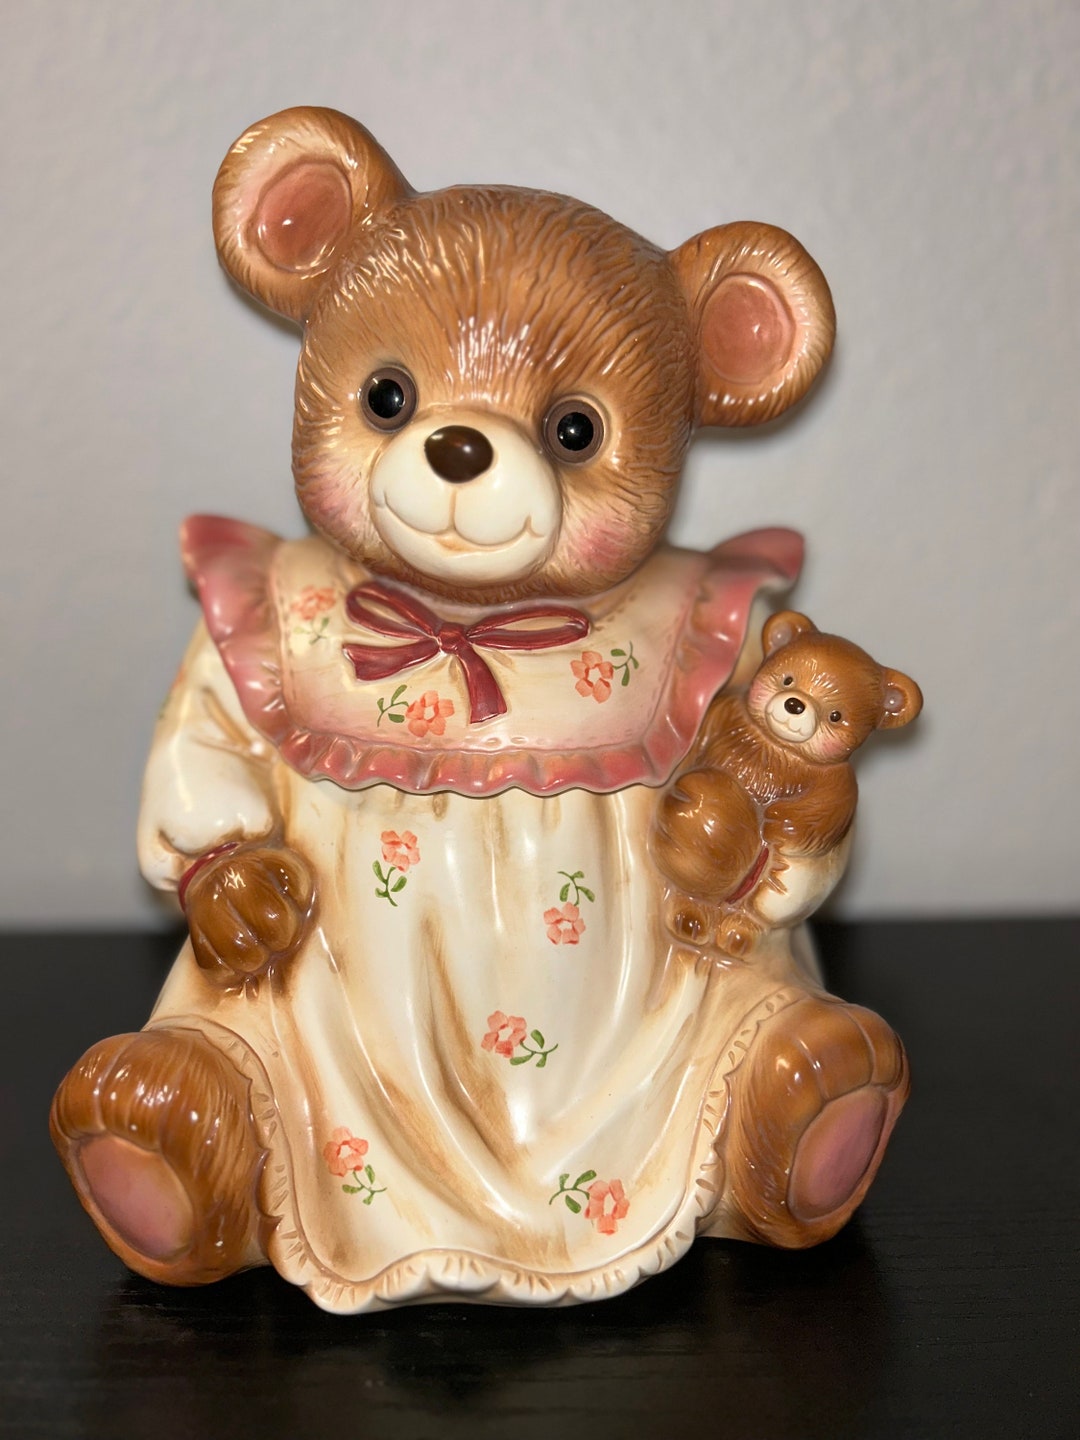 Vintage Teddy Bear Cookie Jar Glass Eyes Wearing Nightgown - Etsy